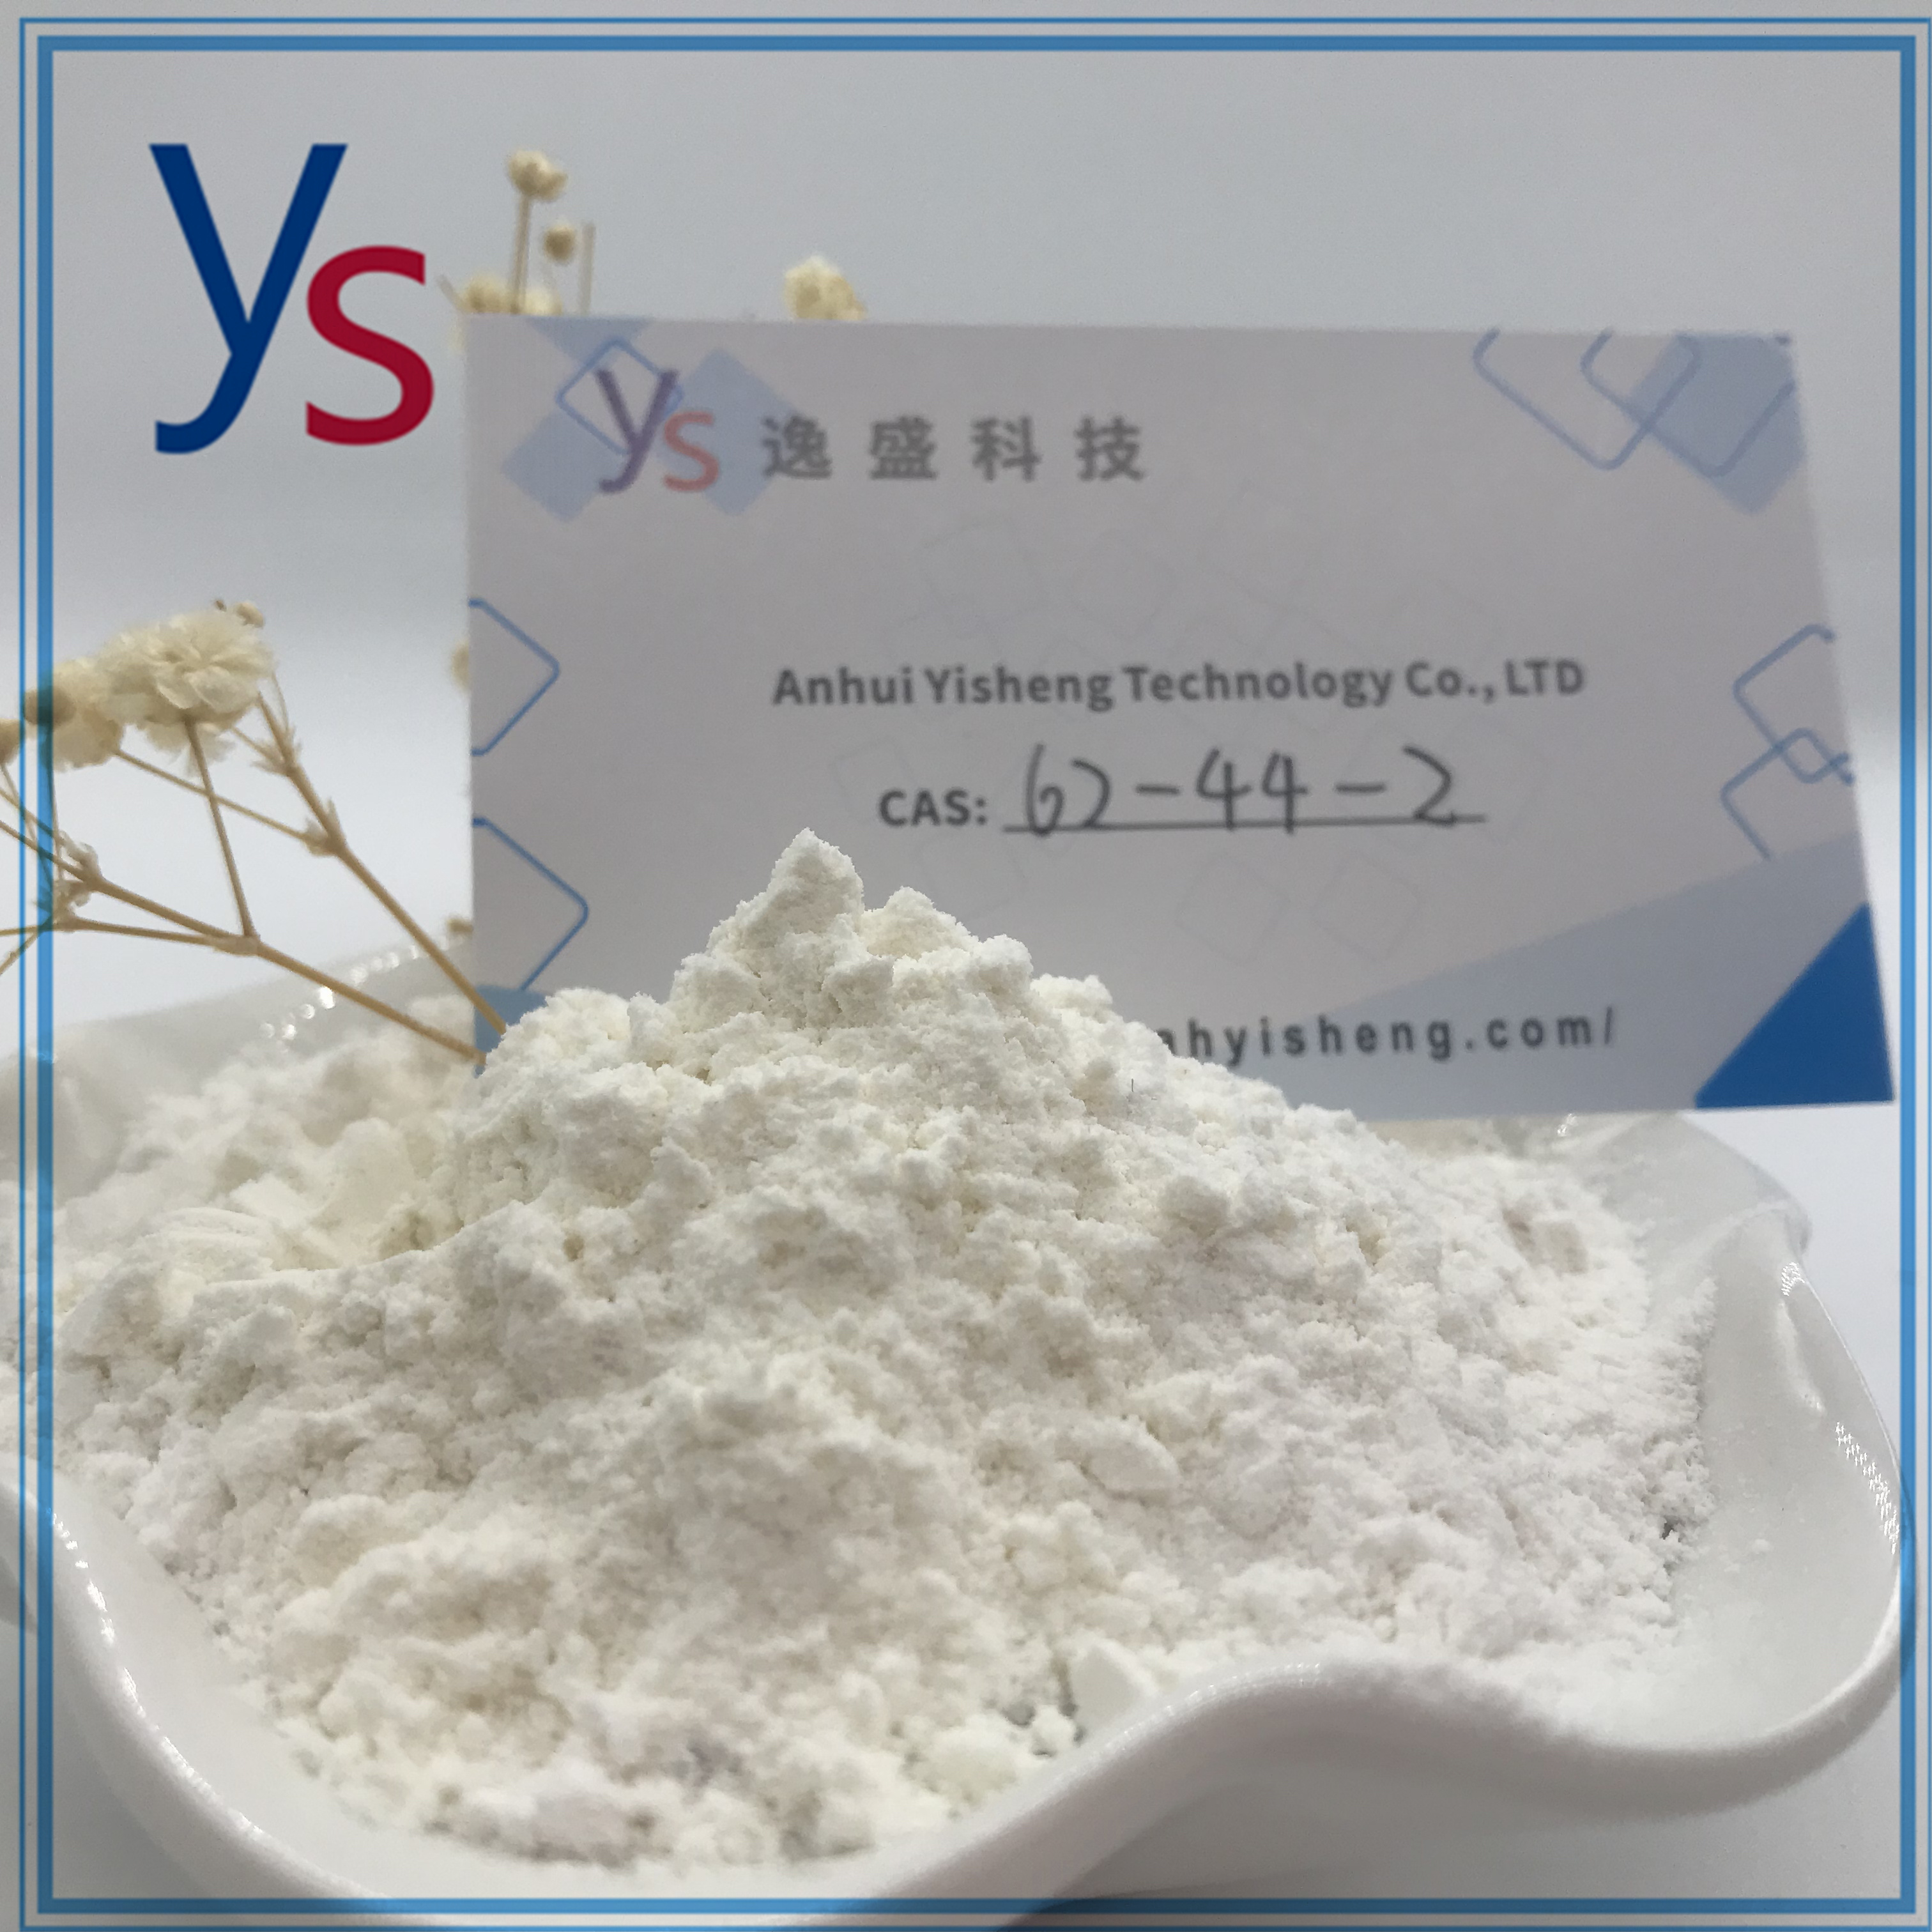 Top Quality CAS 62-44-2 White powder 